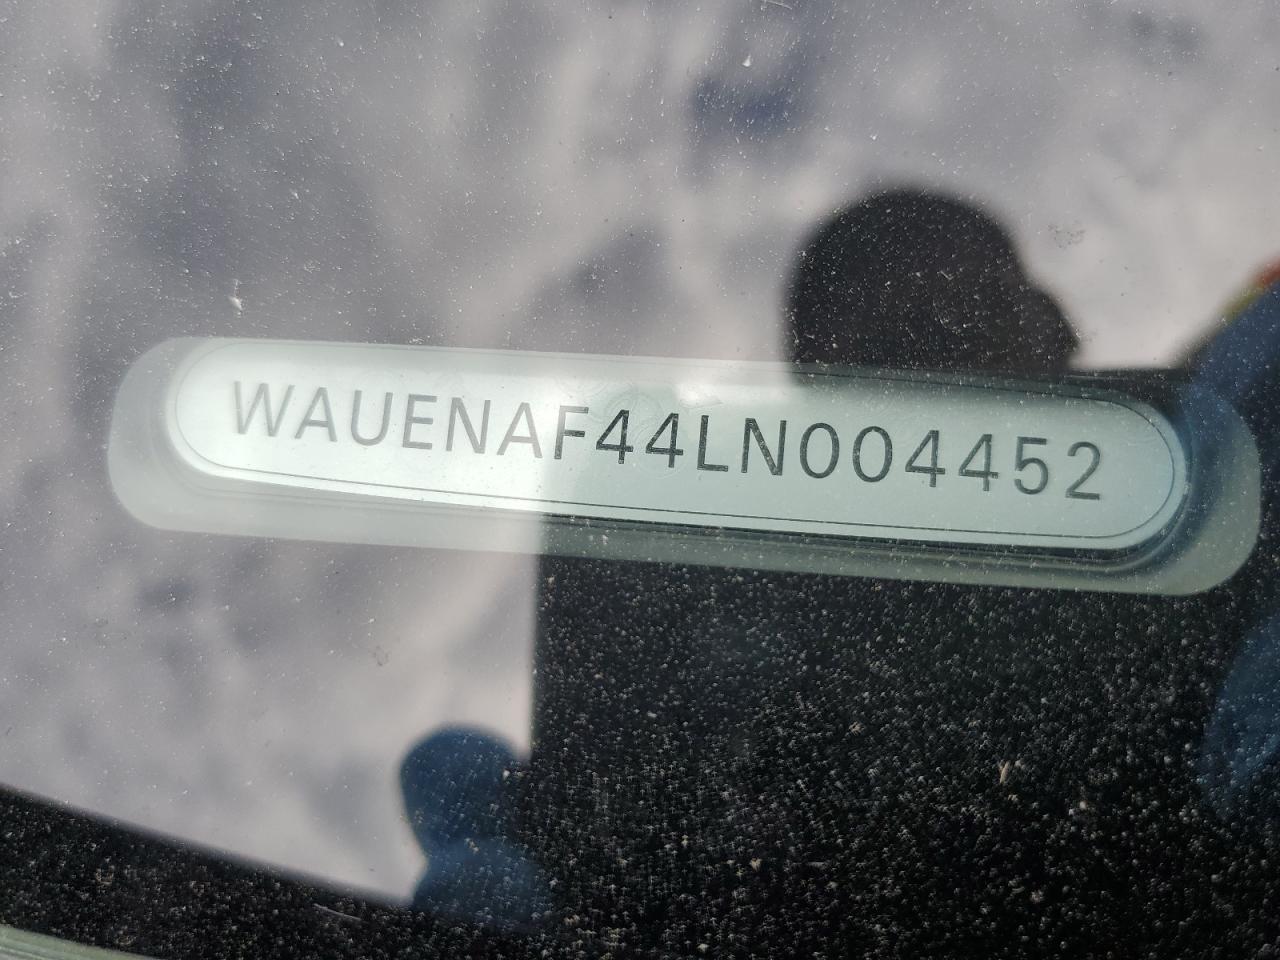 WAUENAF44LN004452  - AUDI A4  2020 IMG - 11